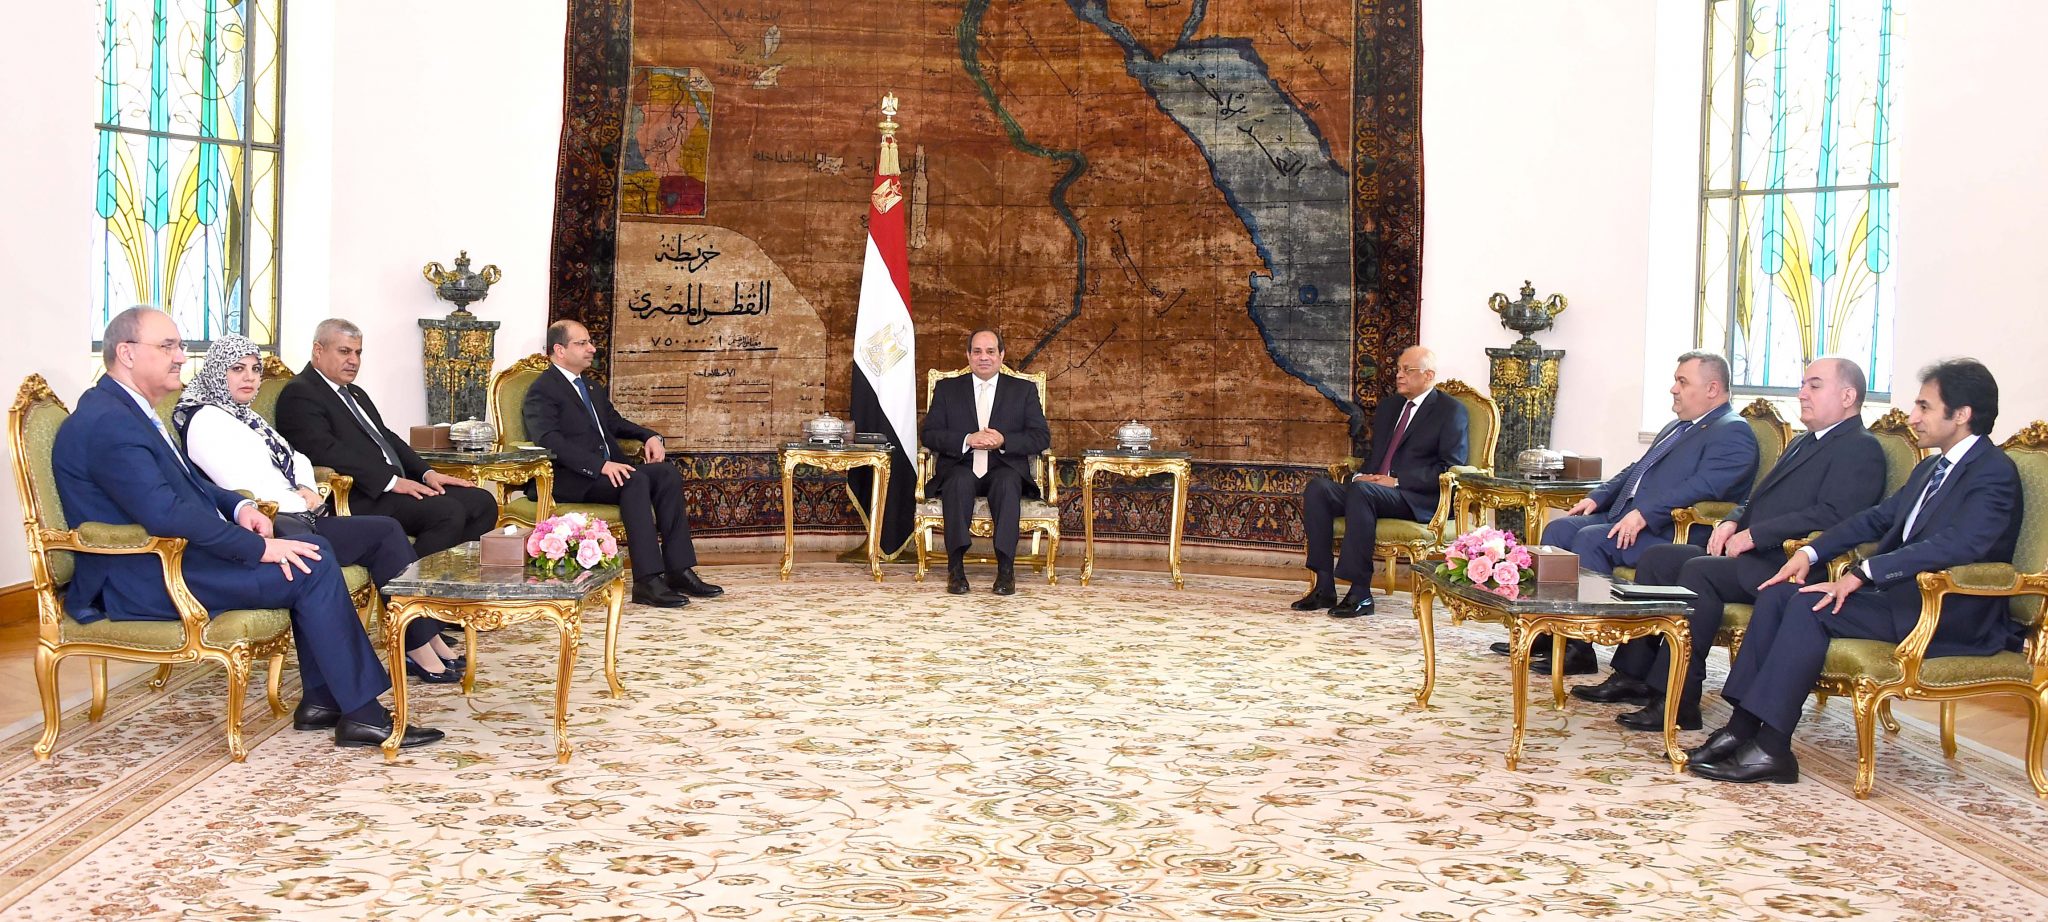   الرئيس يستقبل رئيس مجلس النواب العراقى ووفداً من أعضاء مجلس النواب